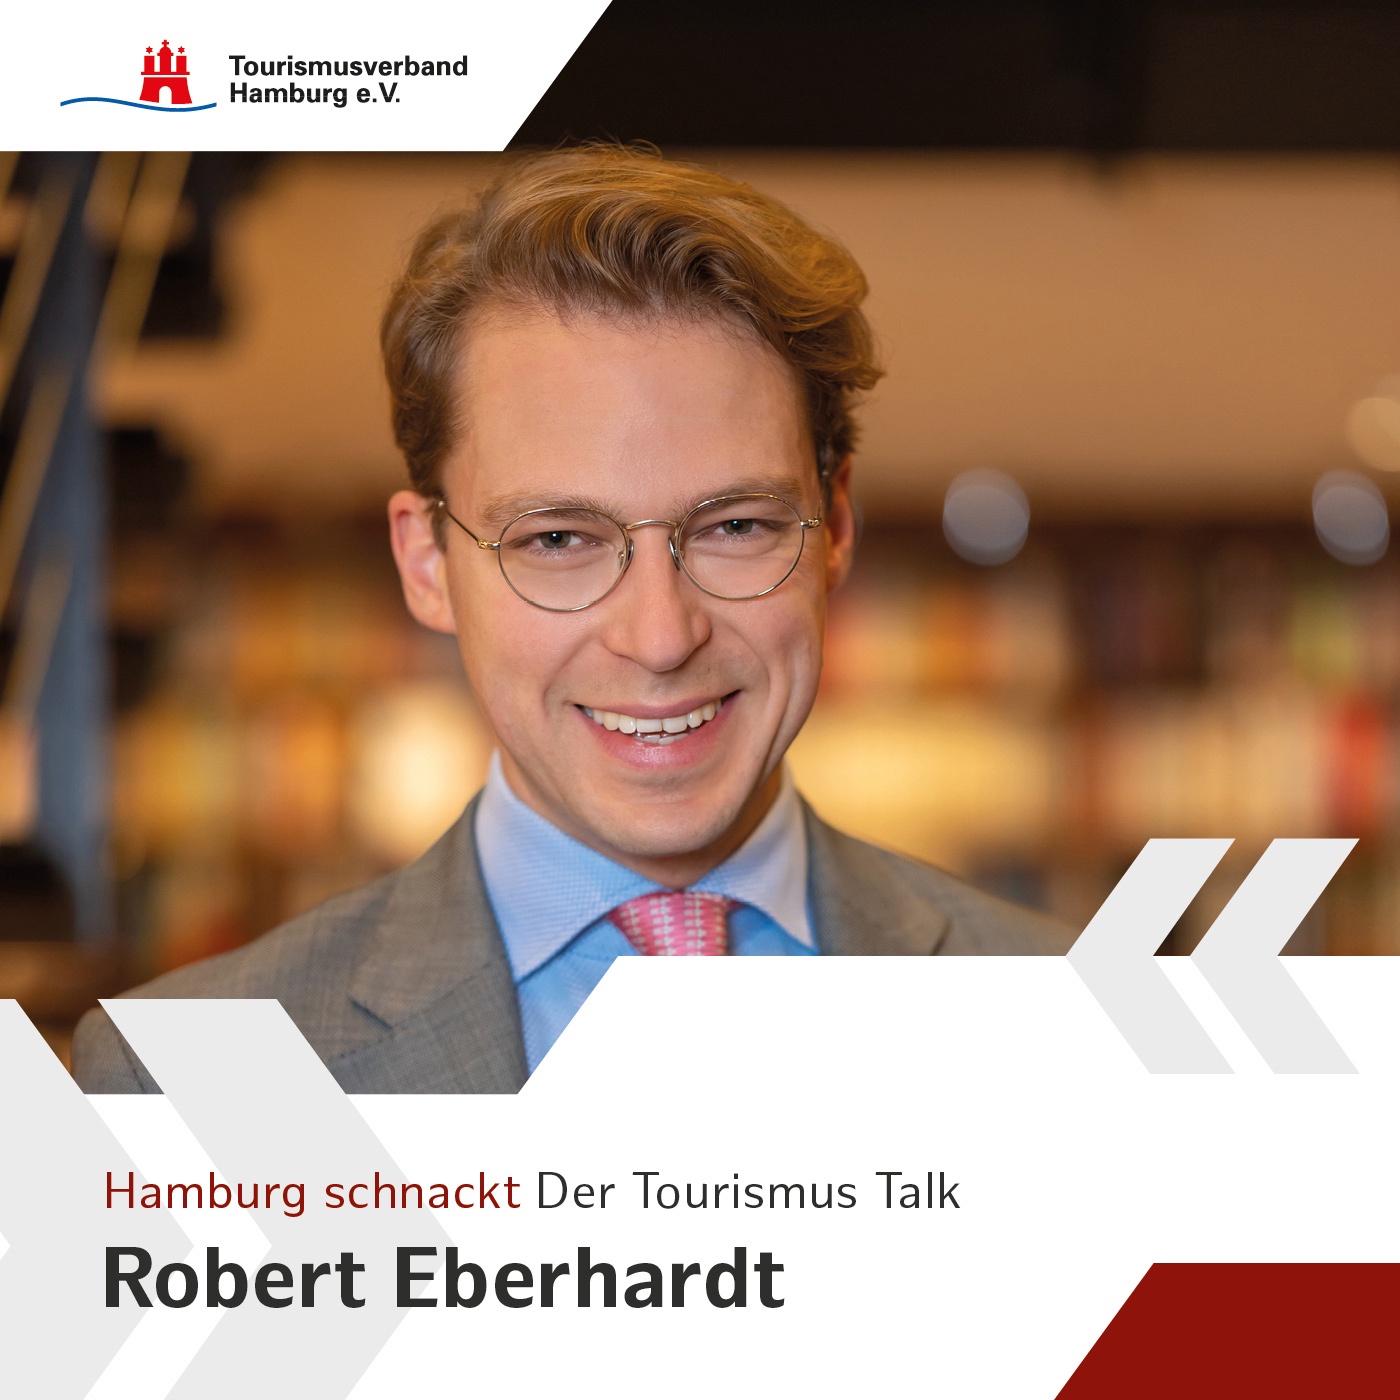 Hamburg schnackt - mit Robert Eberhardt, Geschäftsführer und Inhaber der traditionsreichen Buch- und Kunsthandlung Fe